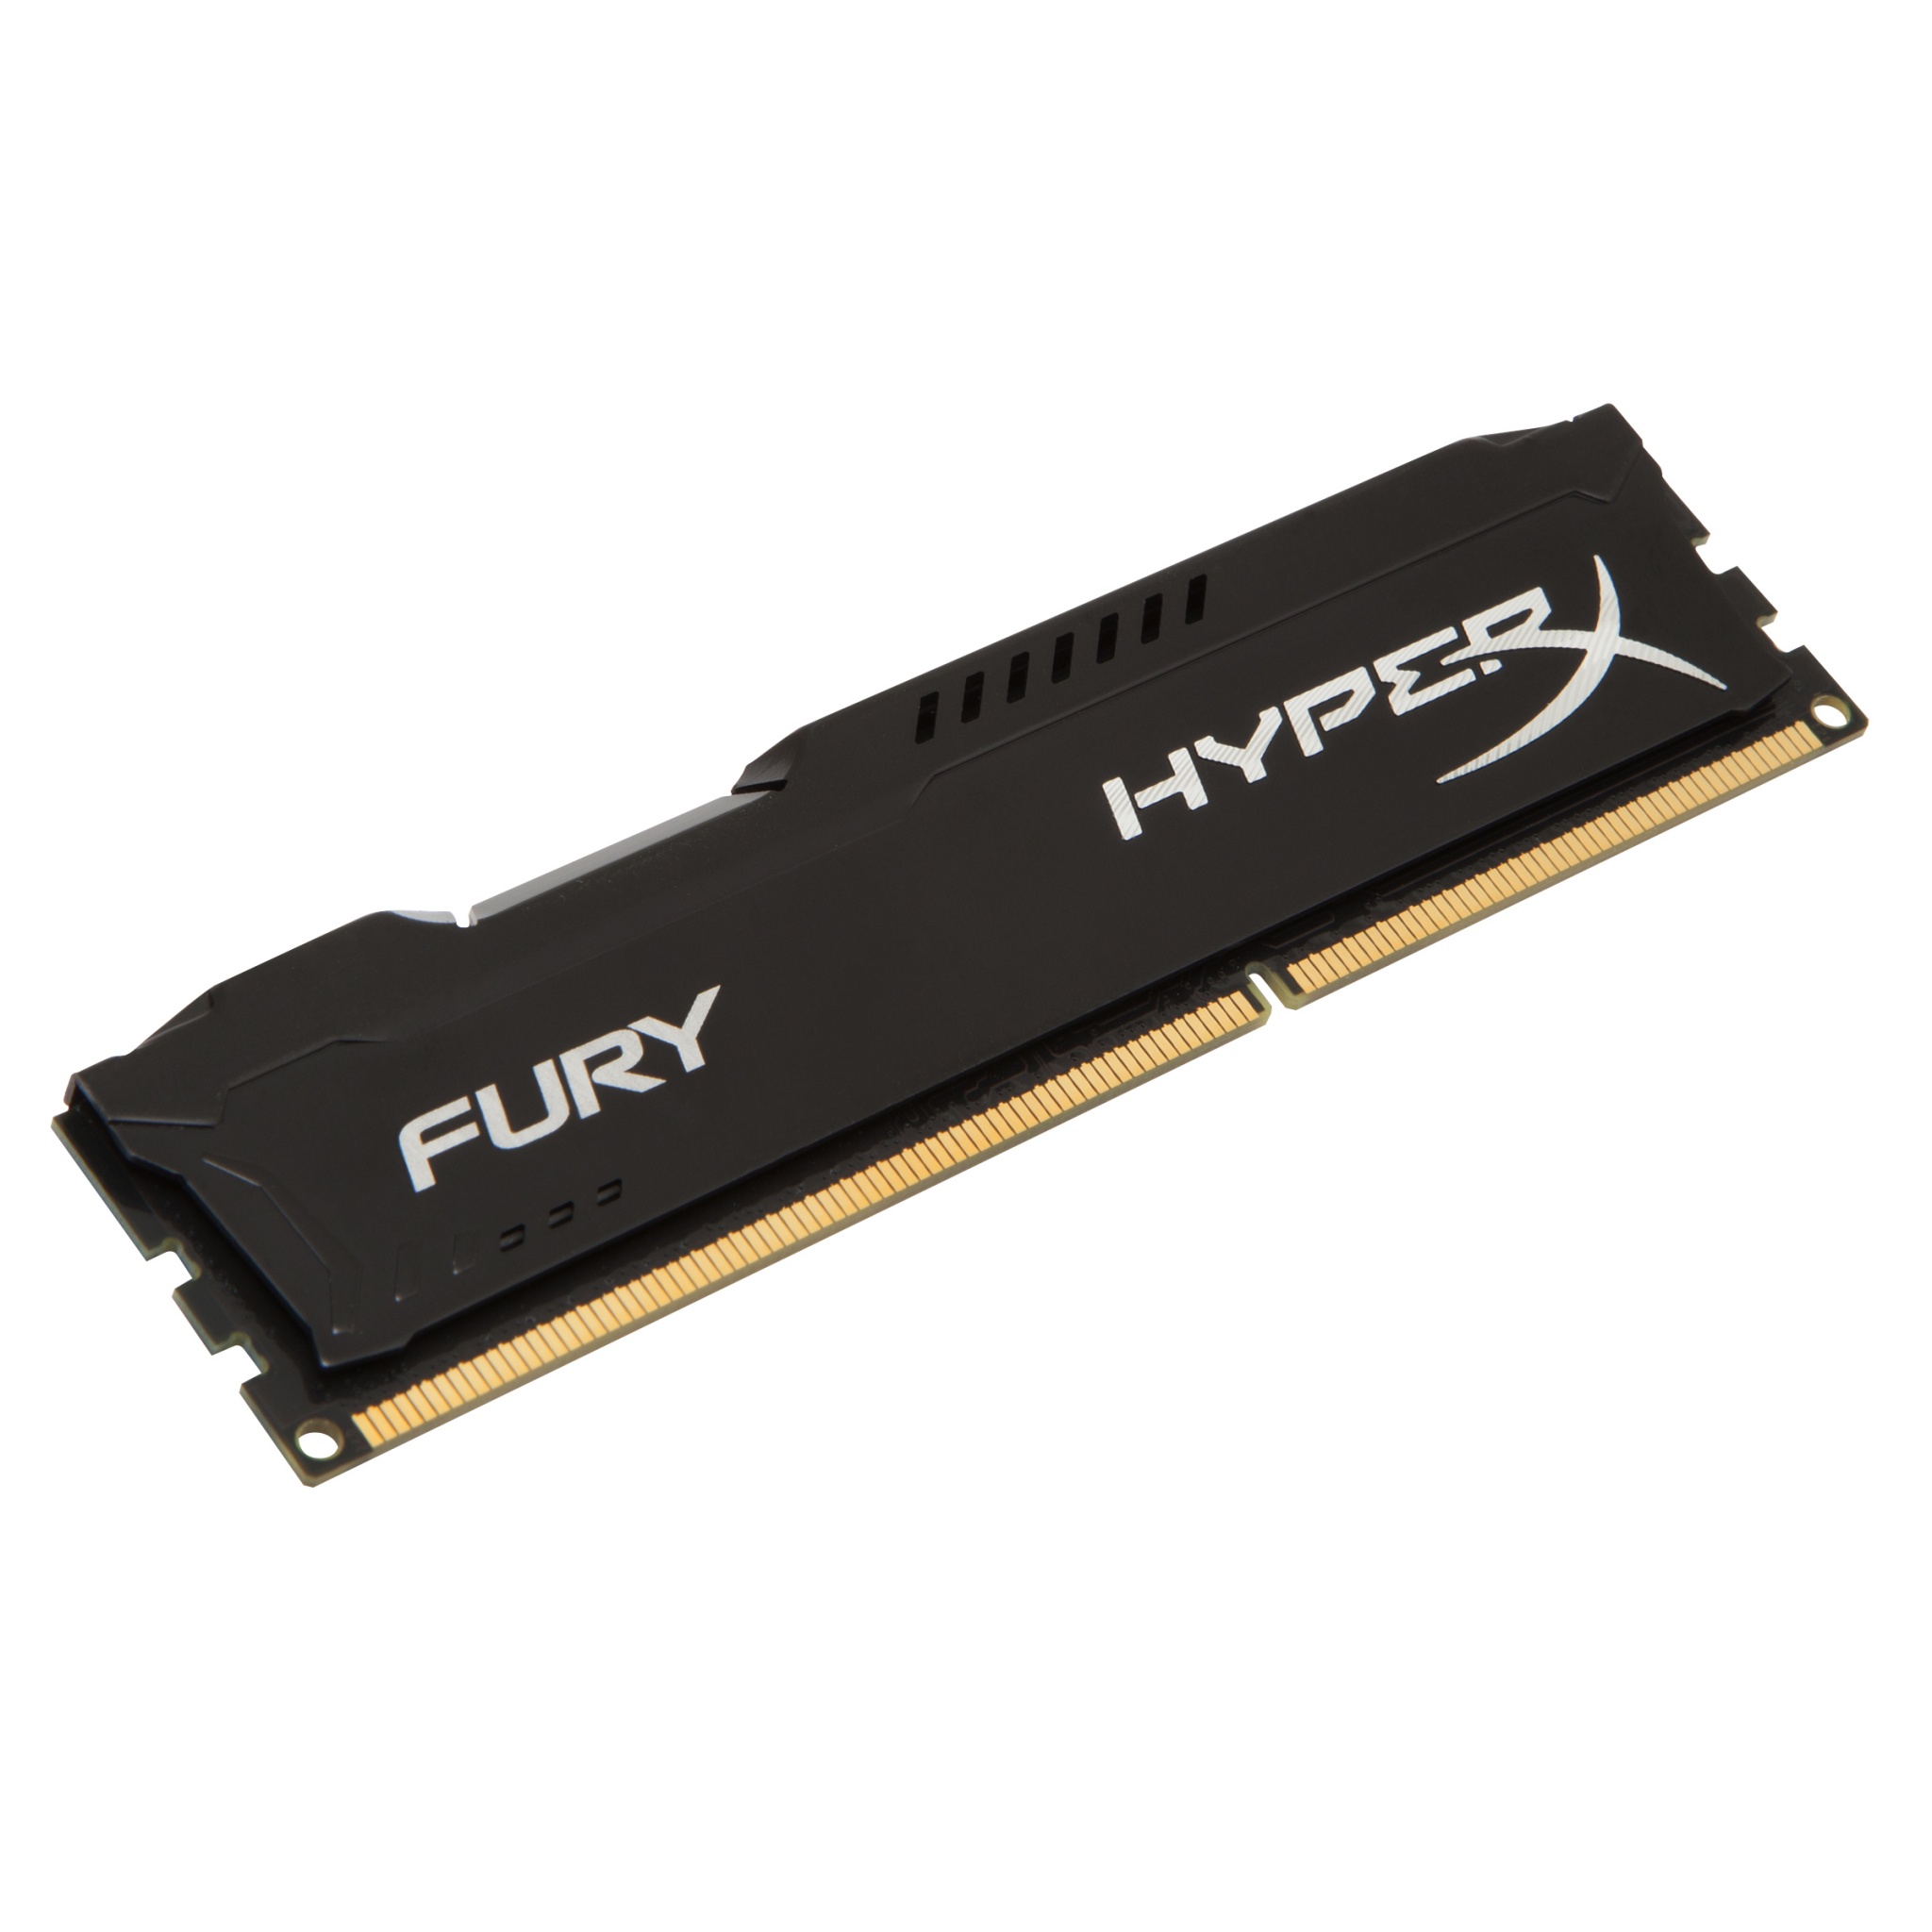 Kingston HyperX Fury DDR3 PC3-12800 1600MHz CL10 Single Memory - Black